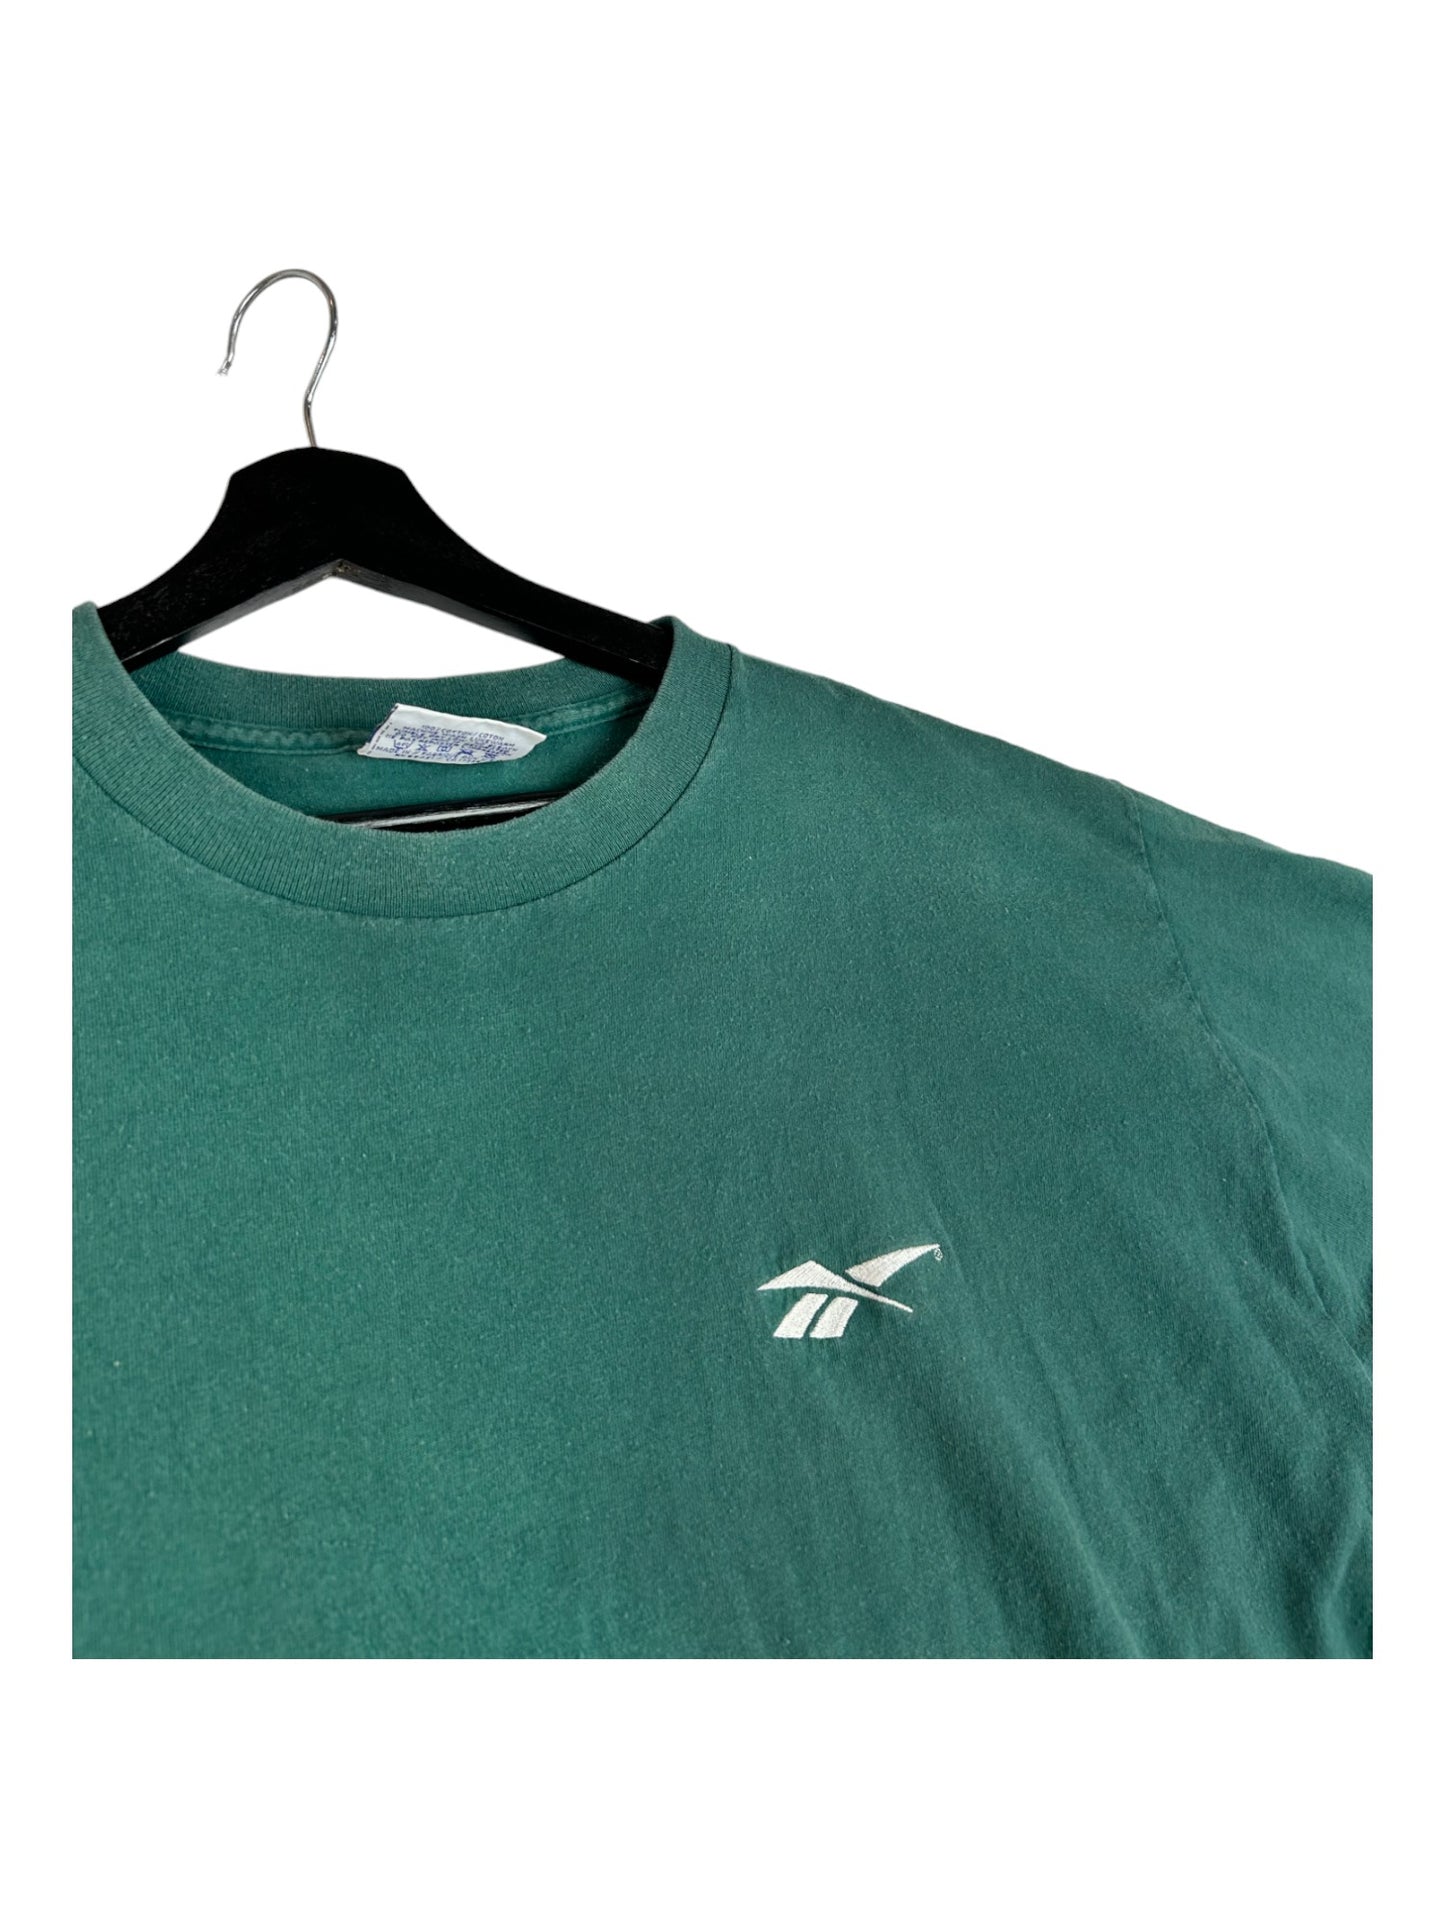 Reebok Turquoise T-Shirt